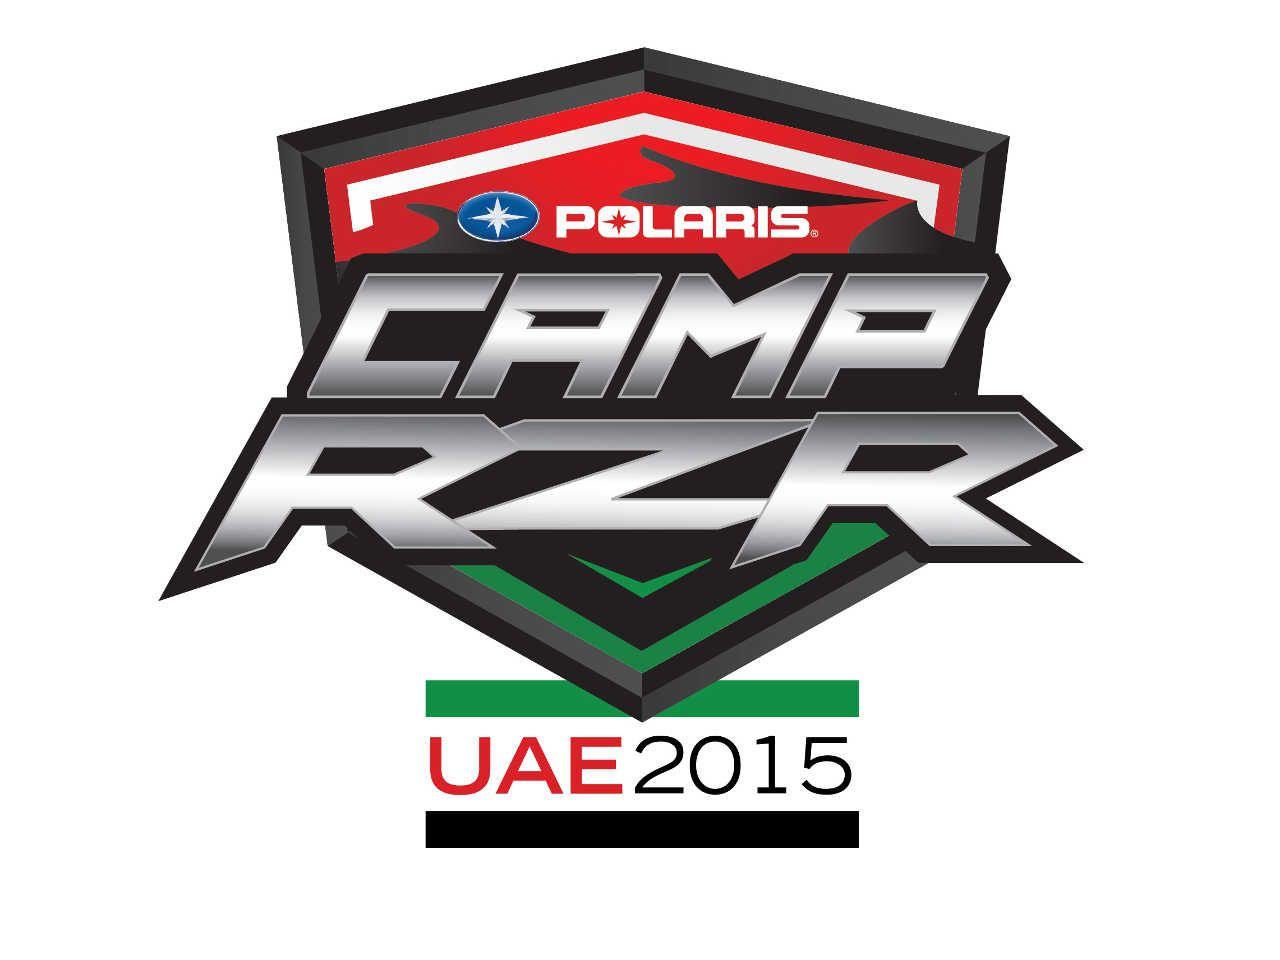 Polaris RZR Logo - Polaris Announces Second Camp RZR in the United Arab Emirates. ATV